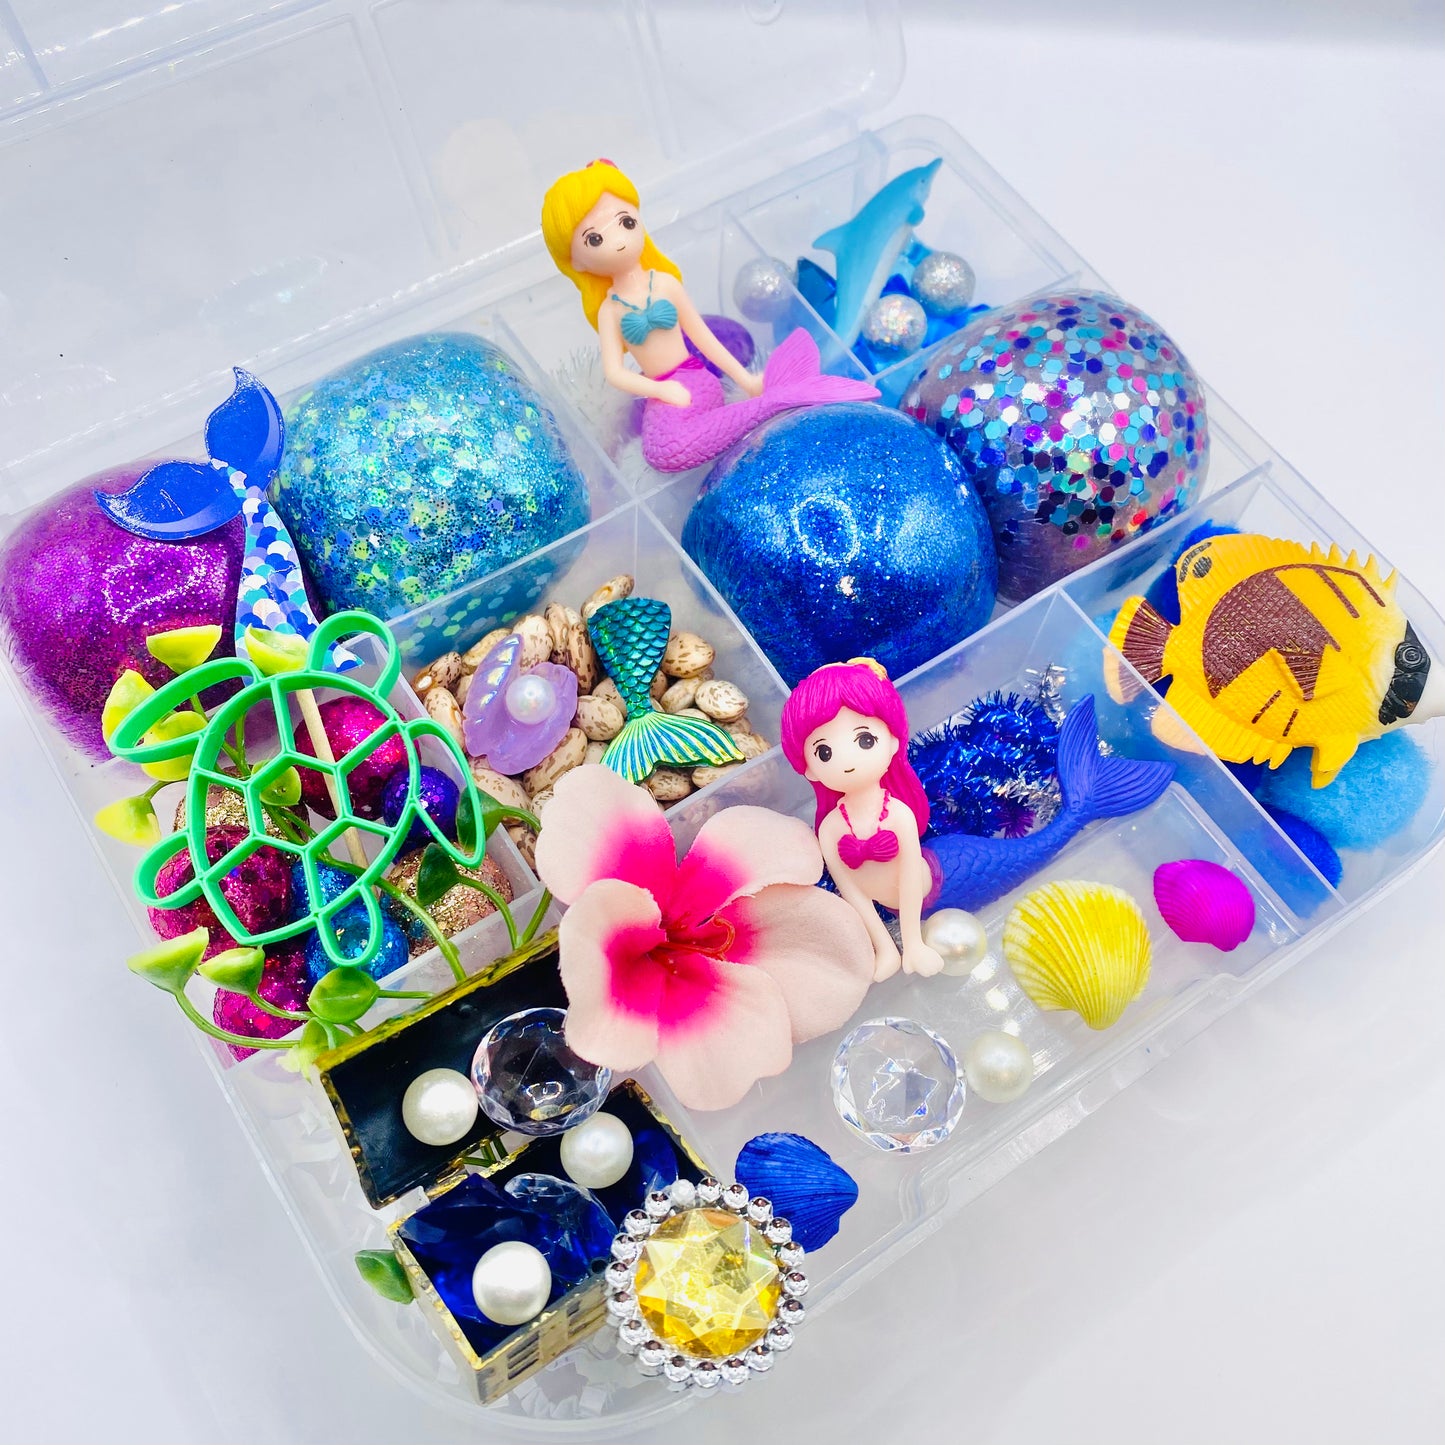 Mermaid Playdough Sensory Kit Activity Toys Poppy and Pine Creations   